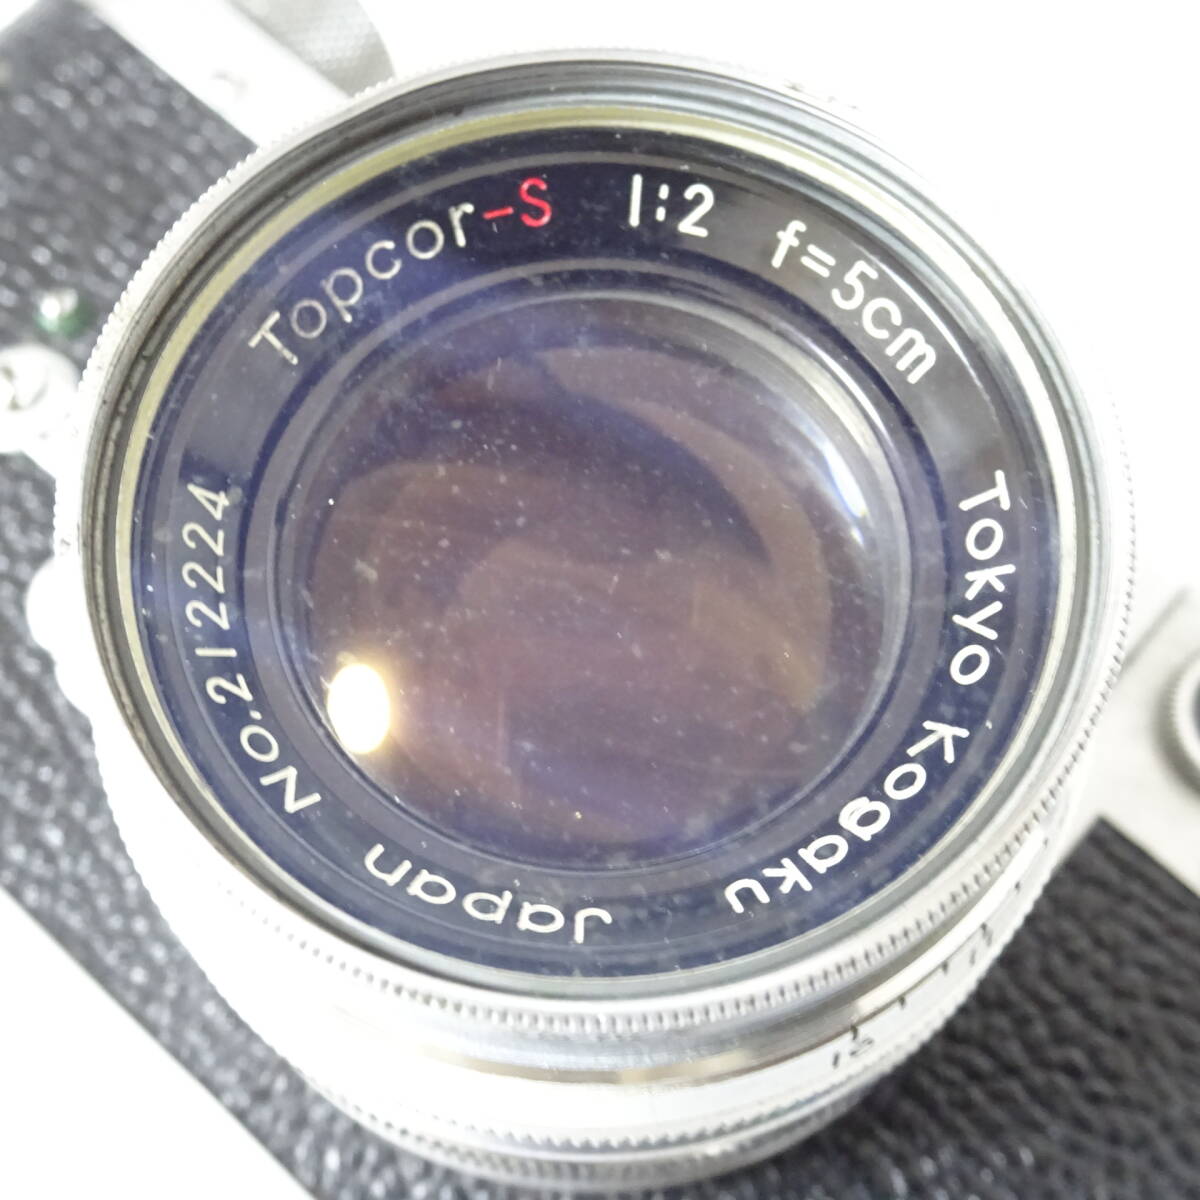 レオタックス F ボディ/Topcor-S 1:2 f=5cm フィルムカメラ Leotax 動作未確認 ジャンク品 60サイズ発送 KK-2676518-194-mrrzの画像2